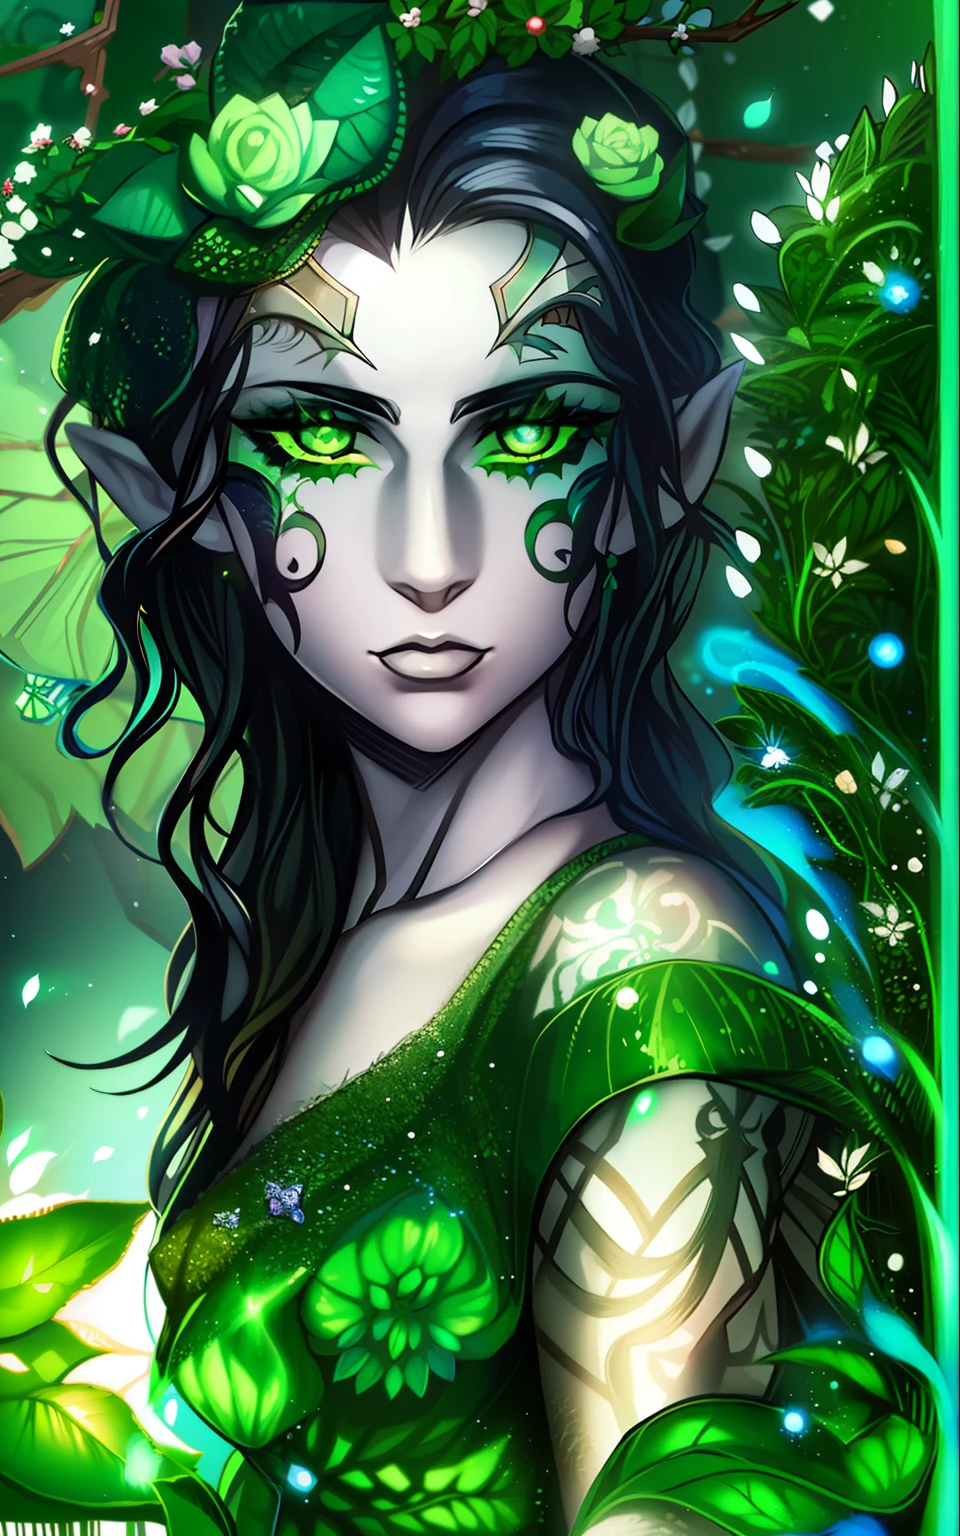 um elfo com pele branca pálida, cabelo preto ondulado, olhos verdes, com tatuagens faciais verdes, usa um vestido que parece ser feito de plantas